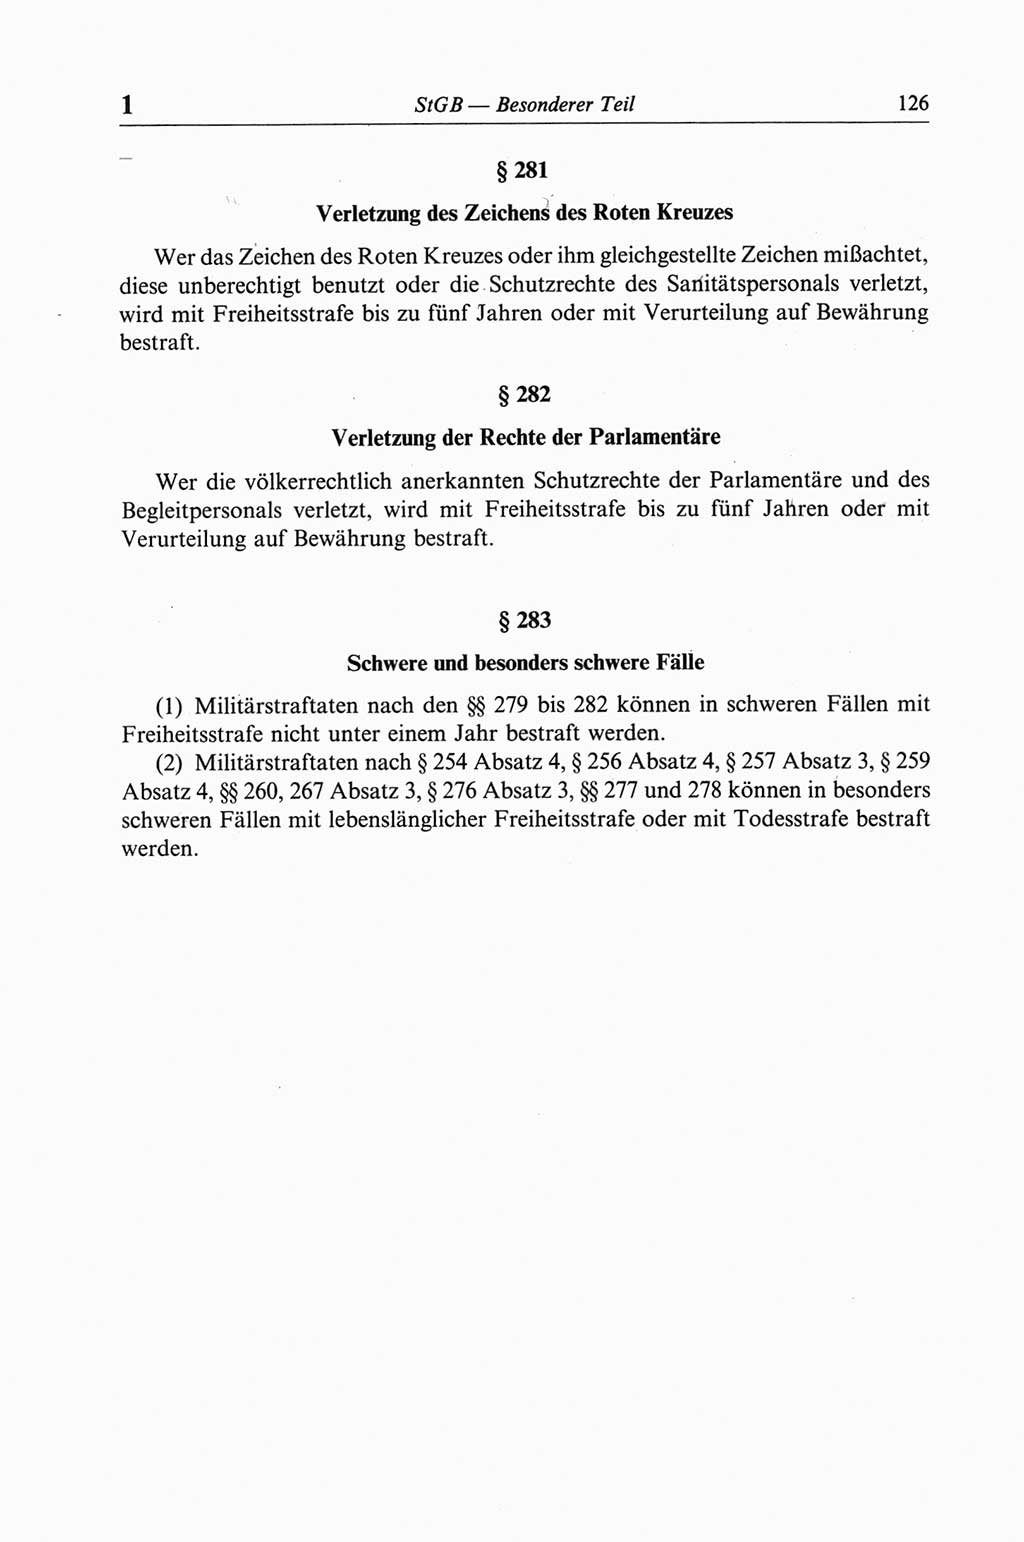 Strafgesetzbuch (StGB) der Deutschen Demokratischen Republik (DDR) und angrenzende Gesetze und Bestimmungen 1968, Seite 126 (StGB Ges. Best. DDR 1968, S. 126)